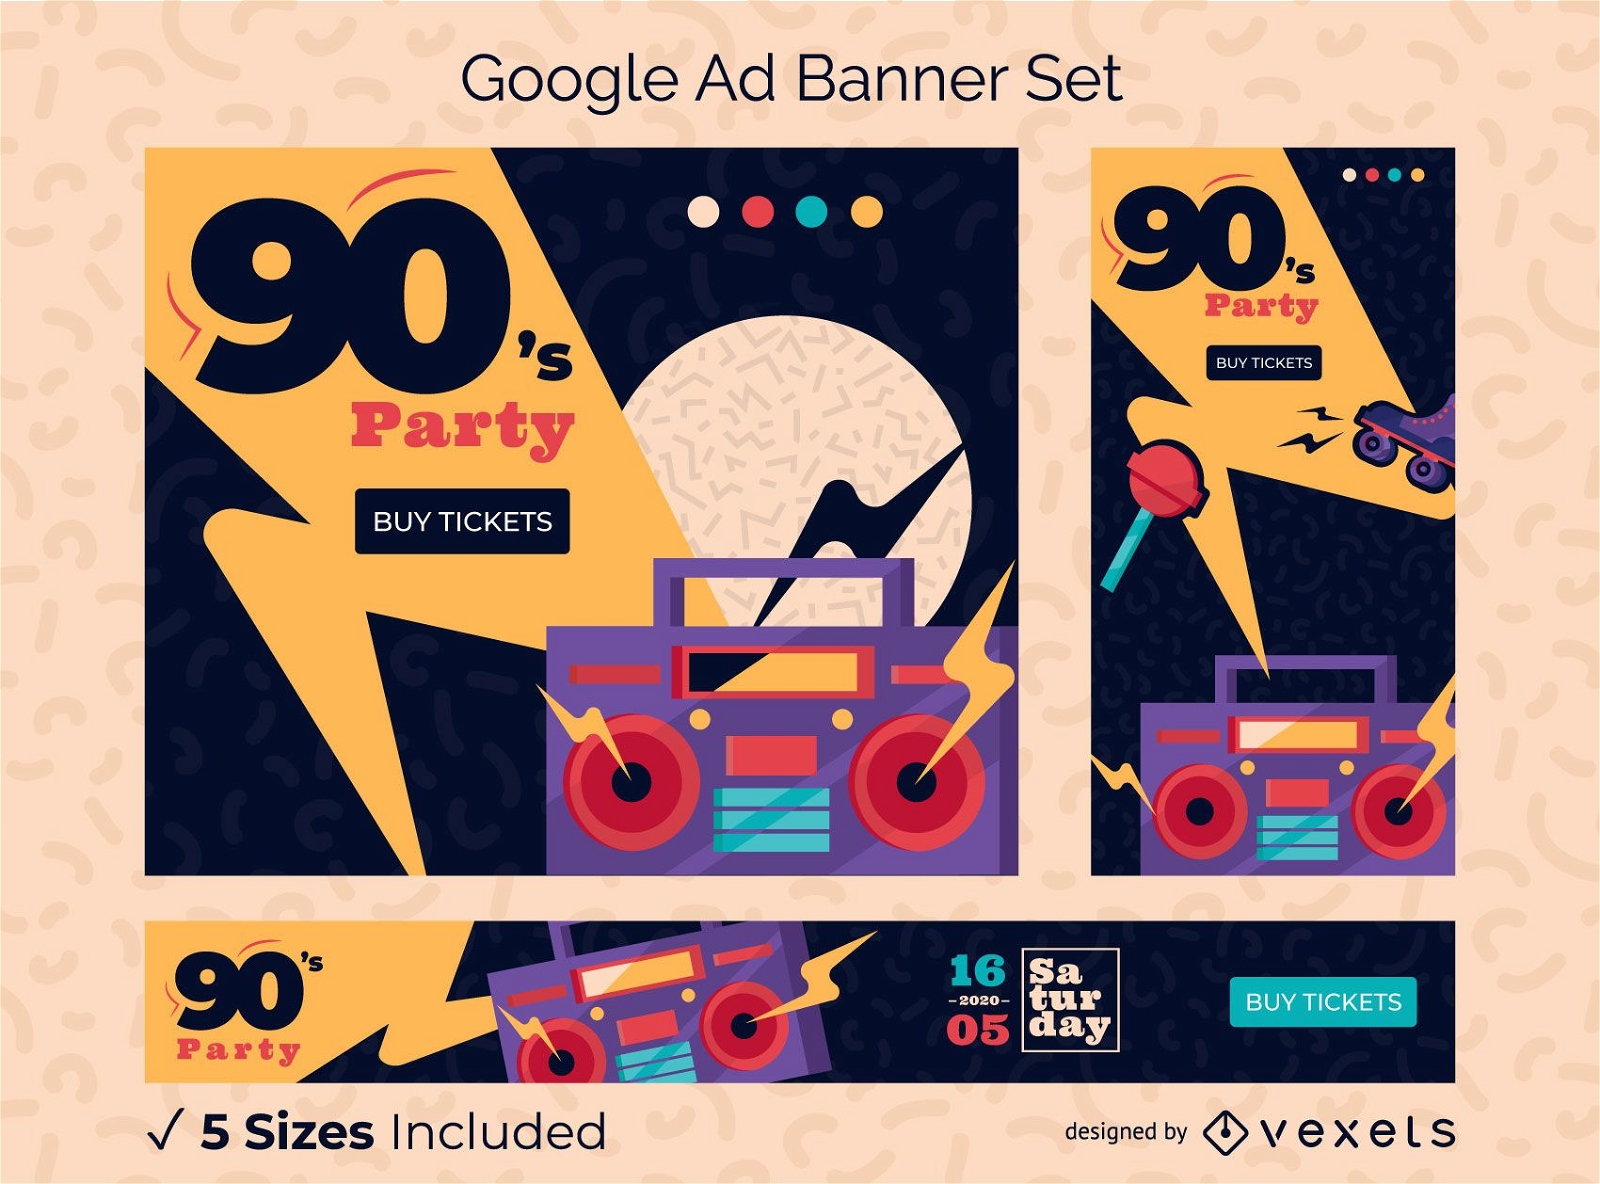 Pacote de design do banner do Google Ads para festa dos anos 90